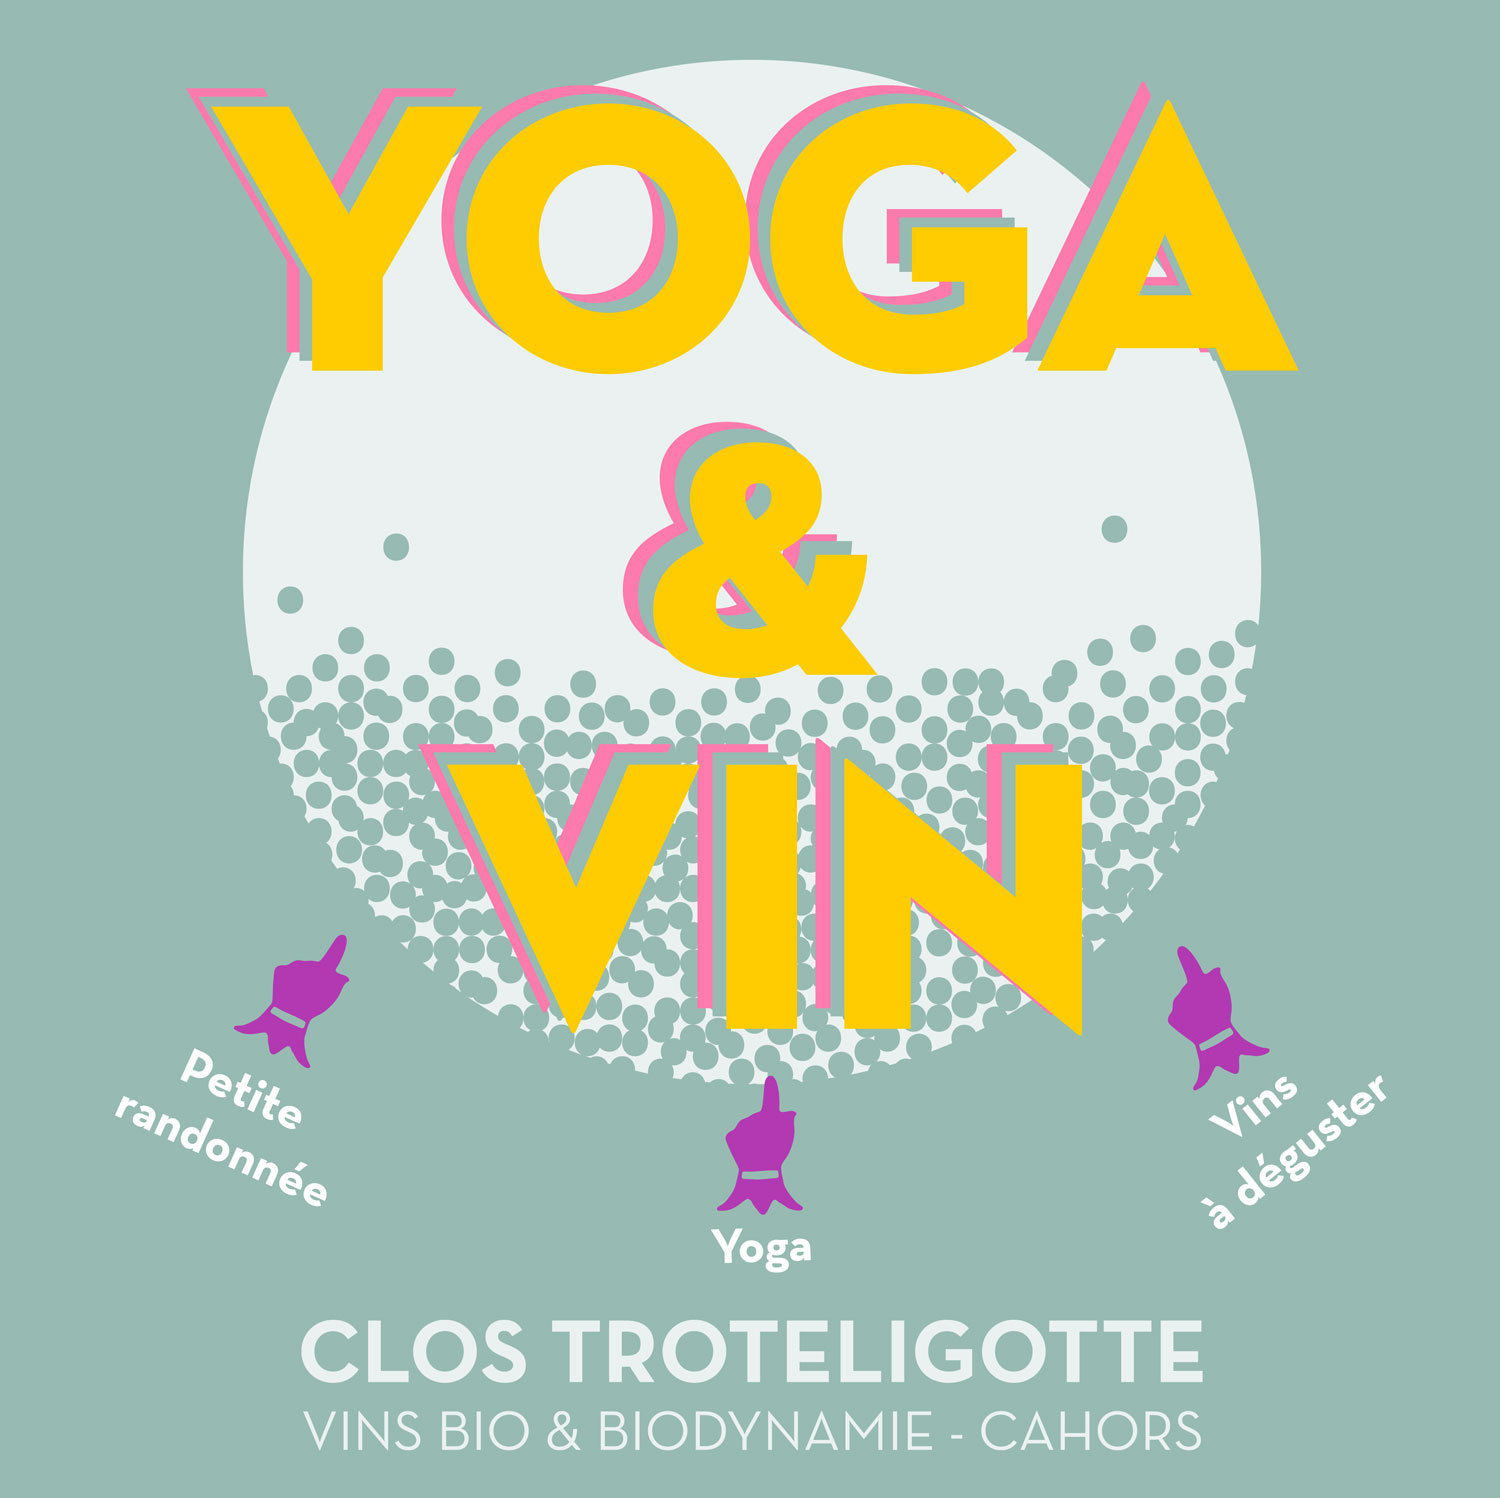 Figeac : Yoga et vin au Clos Troteligotte